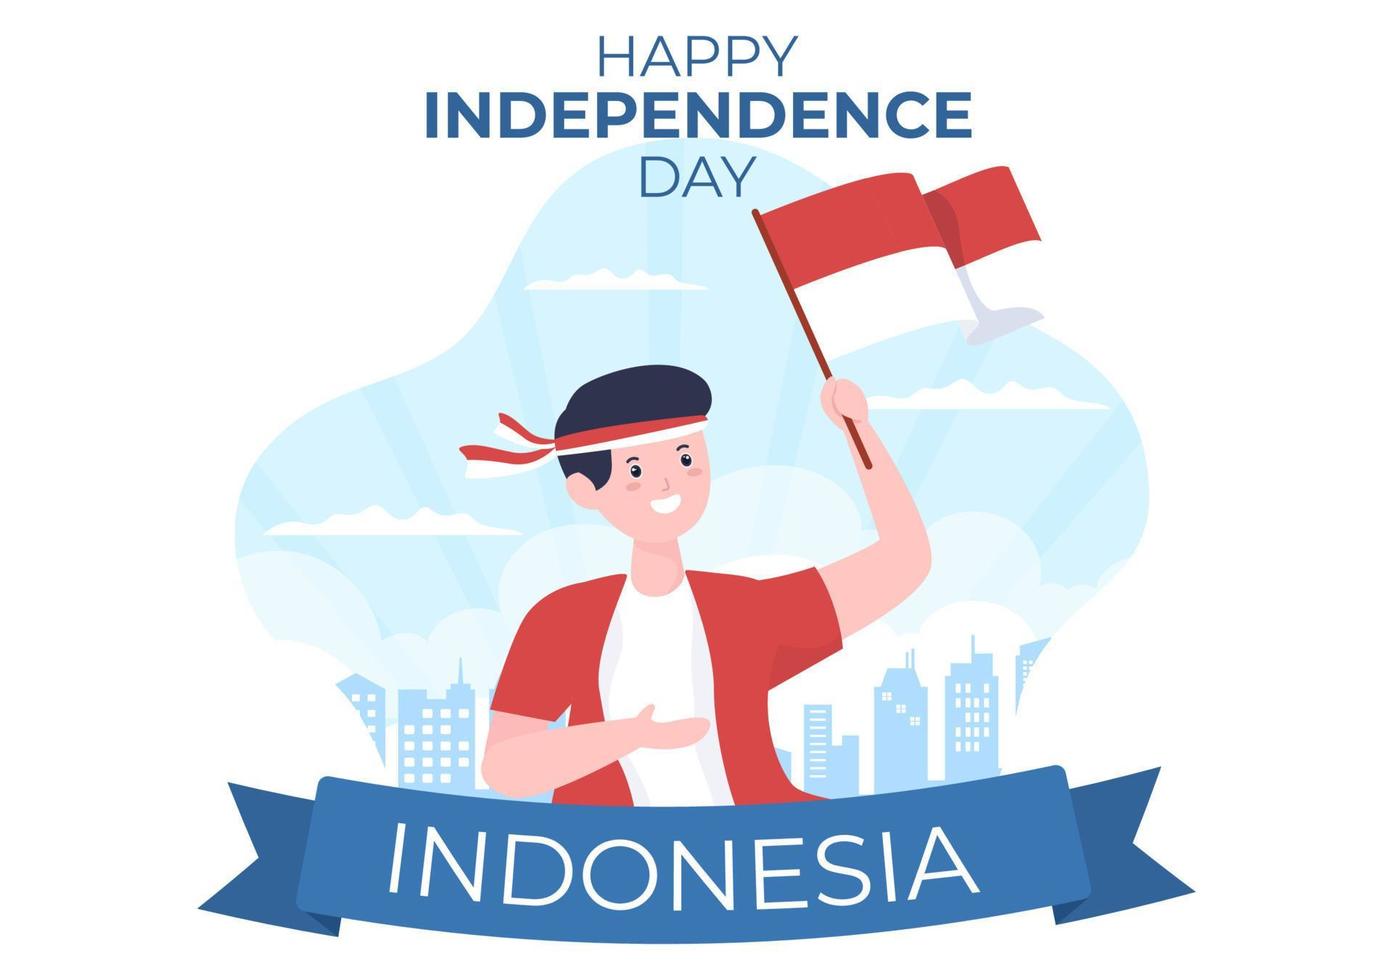 día de la independencia de indonesia el 17 de agosto con juegos tradicionales, bandera roja blanca y personaje de personas en una linda ilustración de fondo de caricatura plana vector